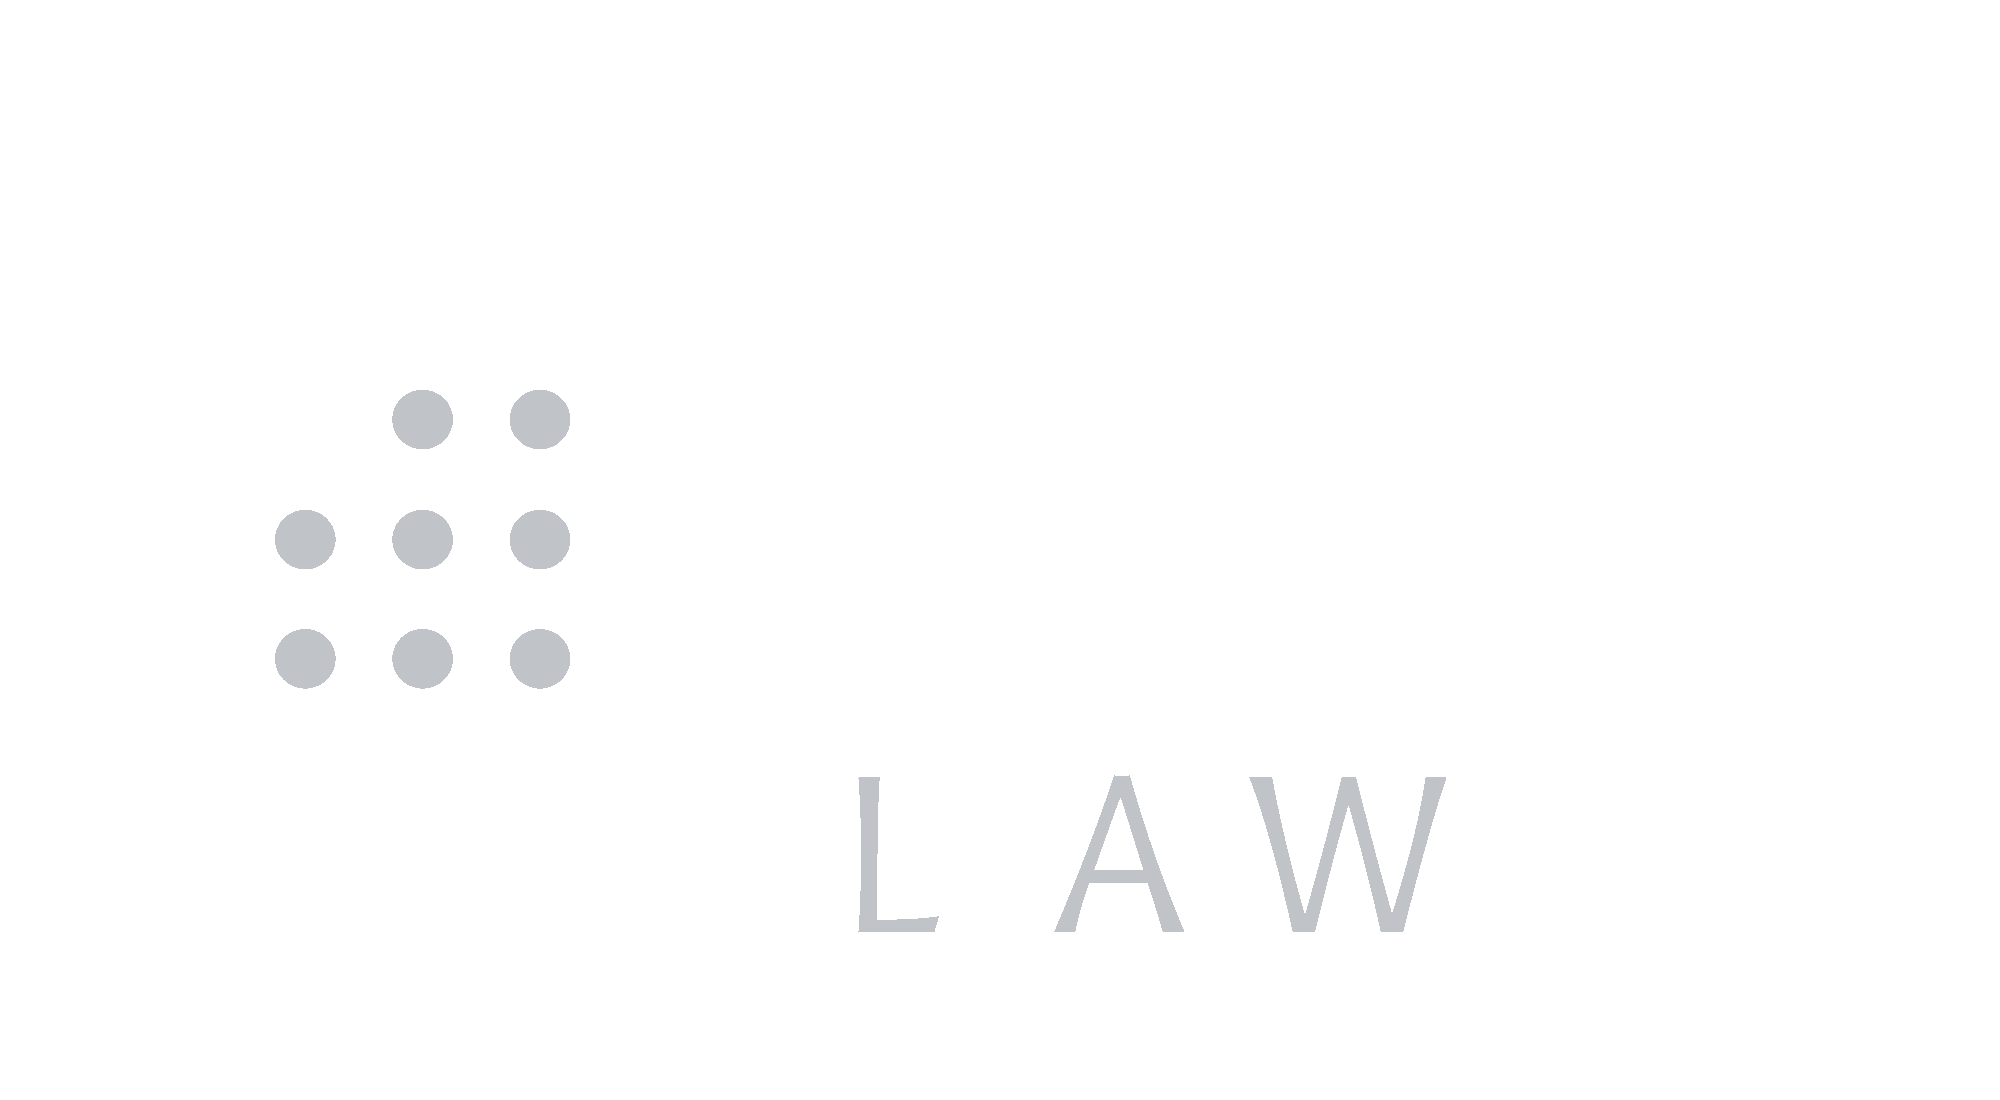 fleet law logo